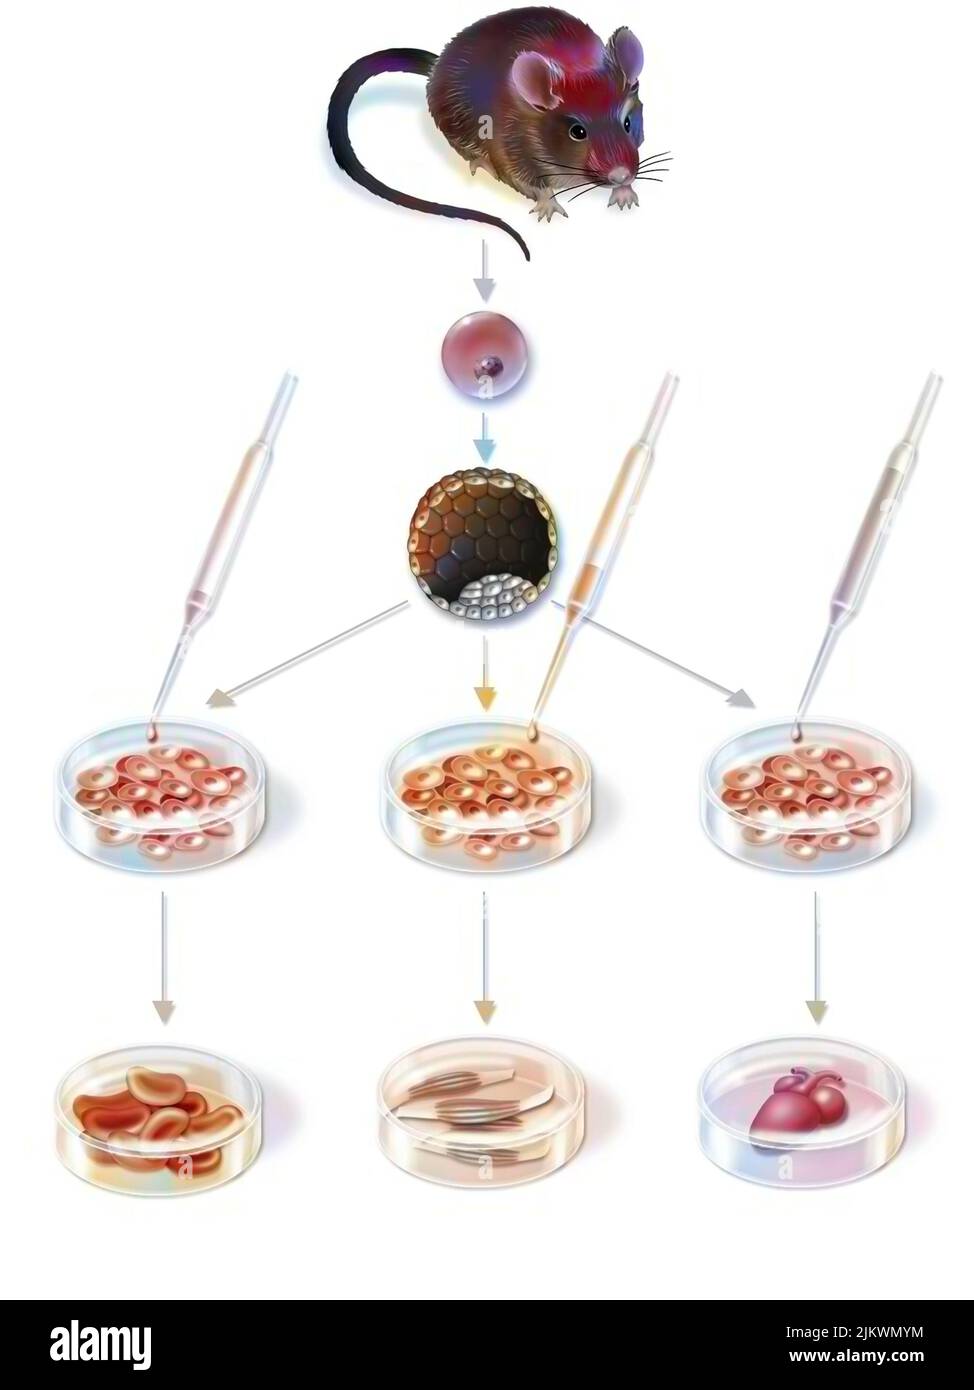 Ricerca nella terapia cellulare: Ottenimento e differenziazione delle cellule staminali embrionali. Foto Stock